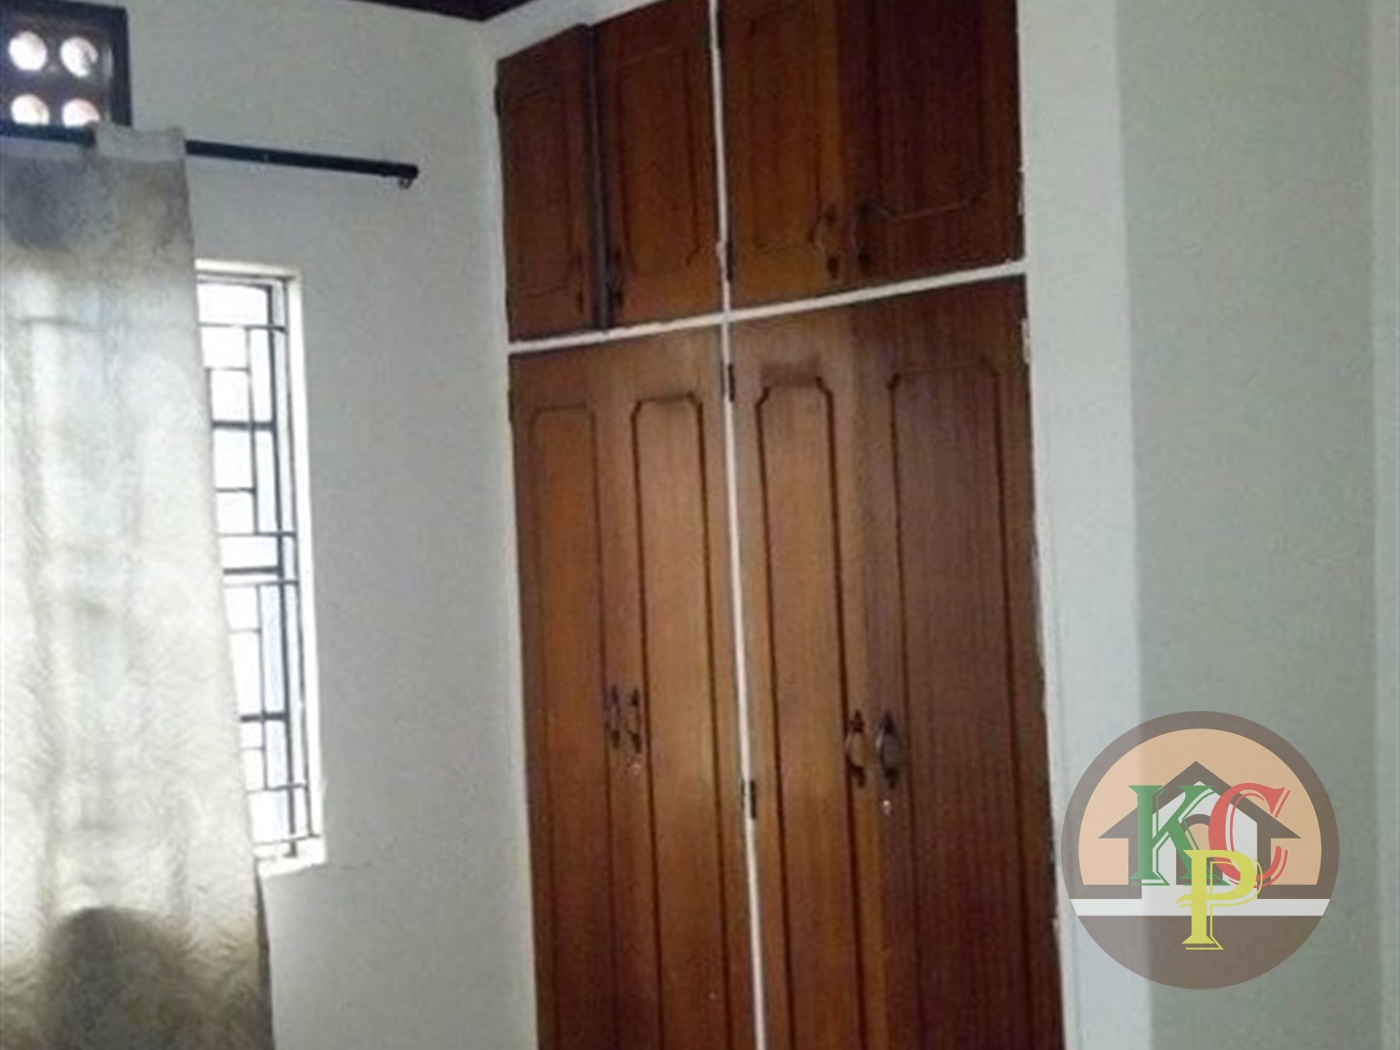 Bungalow for rent in Kireka Kampala